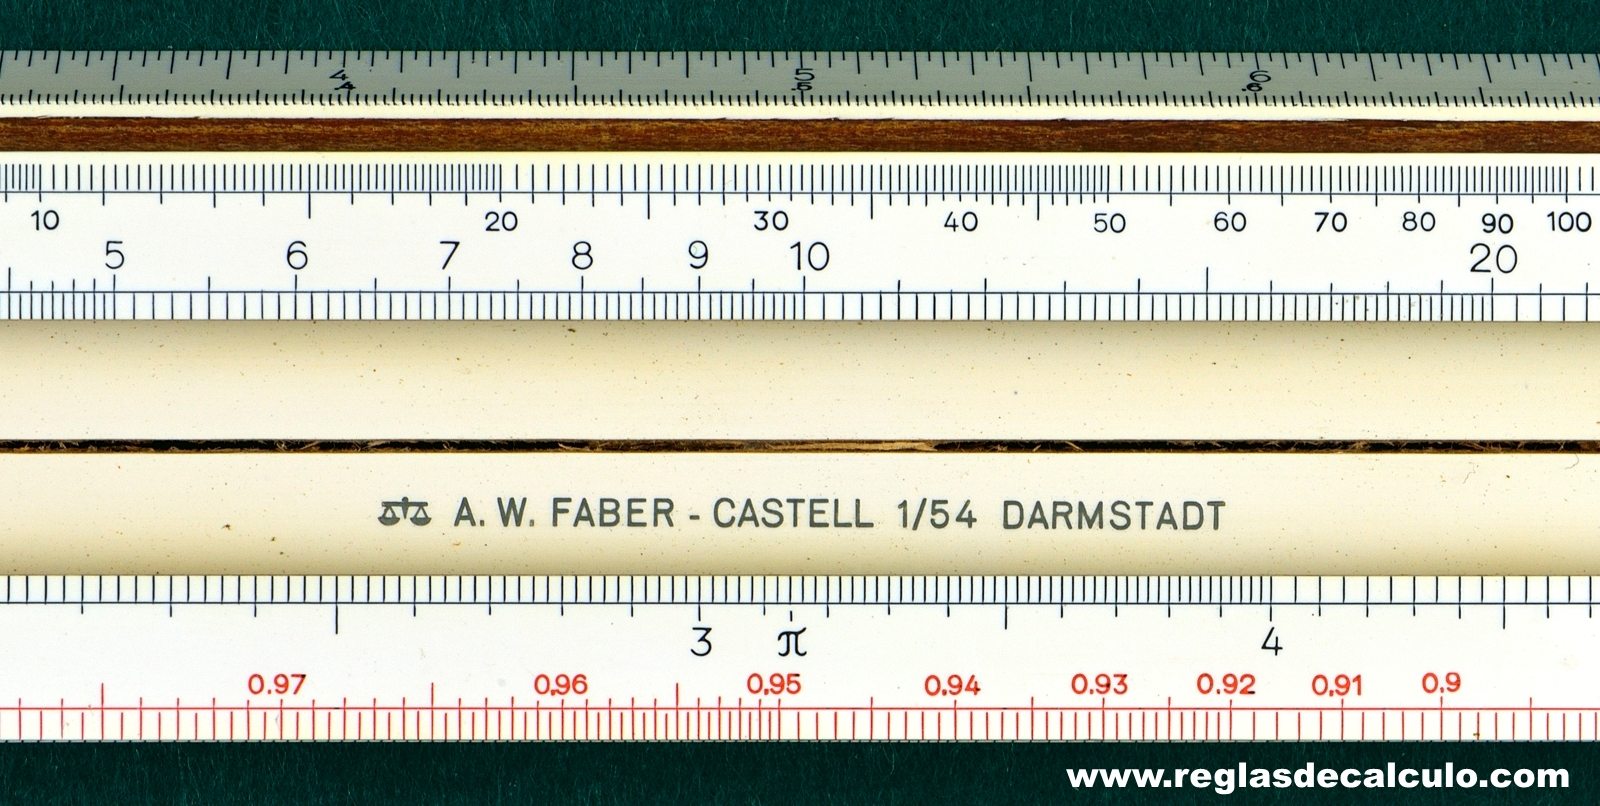 Regla de Calculo Slide rule Faber Castell 1/54 Darmstadt